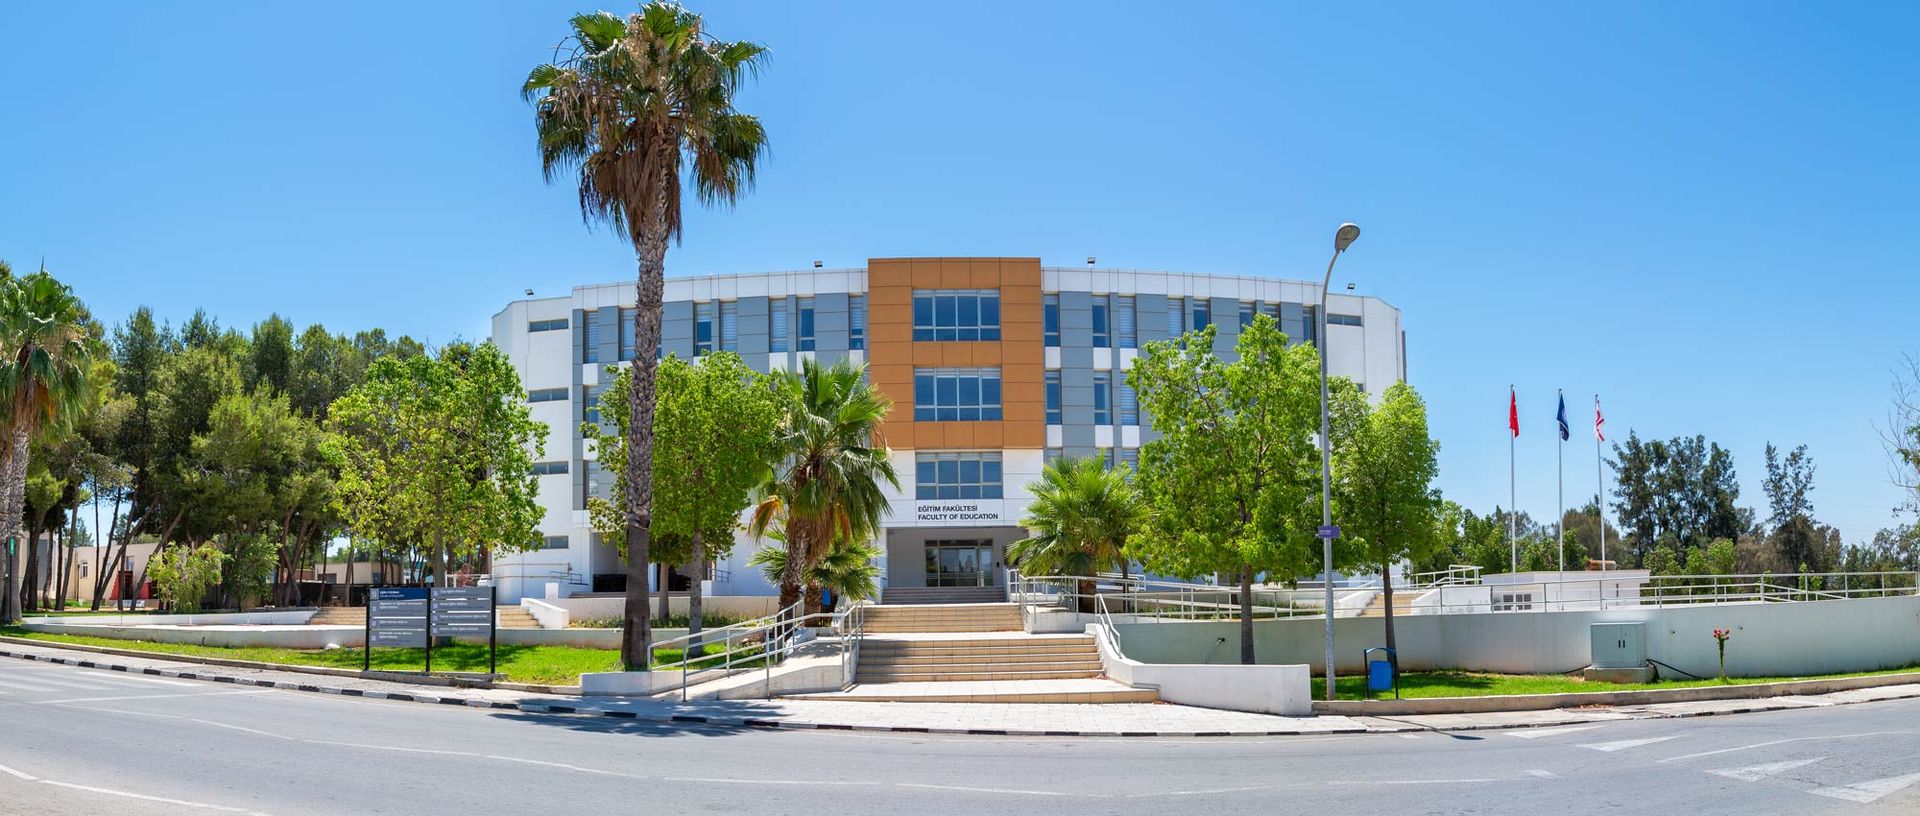 Faculty Of Education Eastern Mediterranean University Emu Cyprus